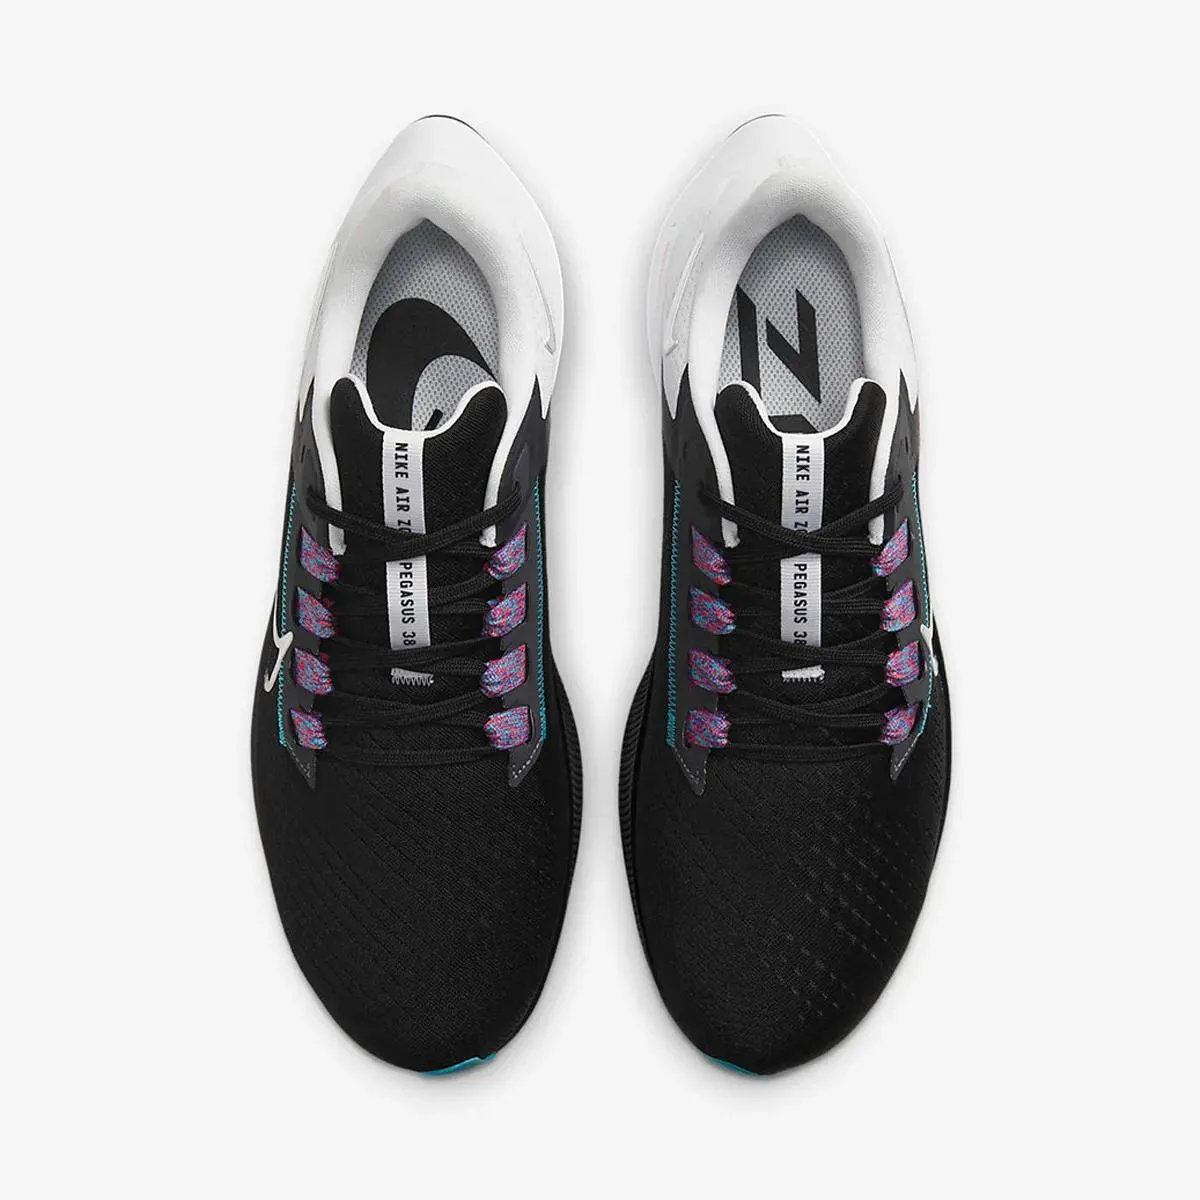 Nike Tenisice AIR ZOOM PEGASUS 38 